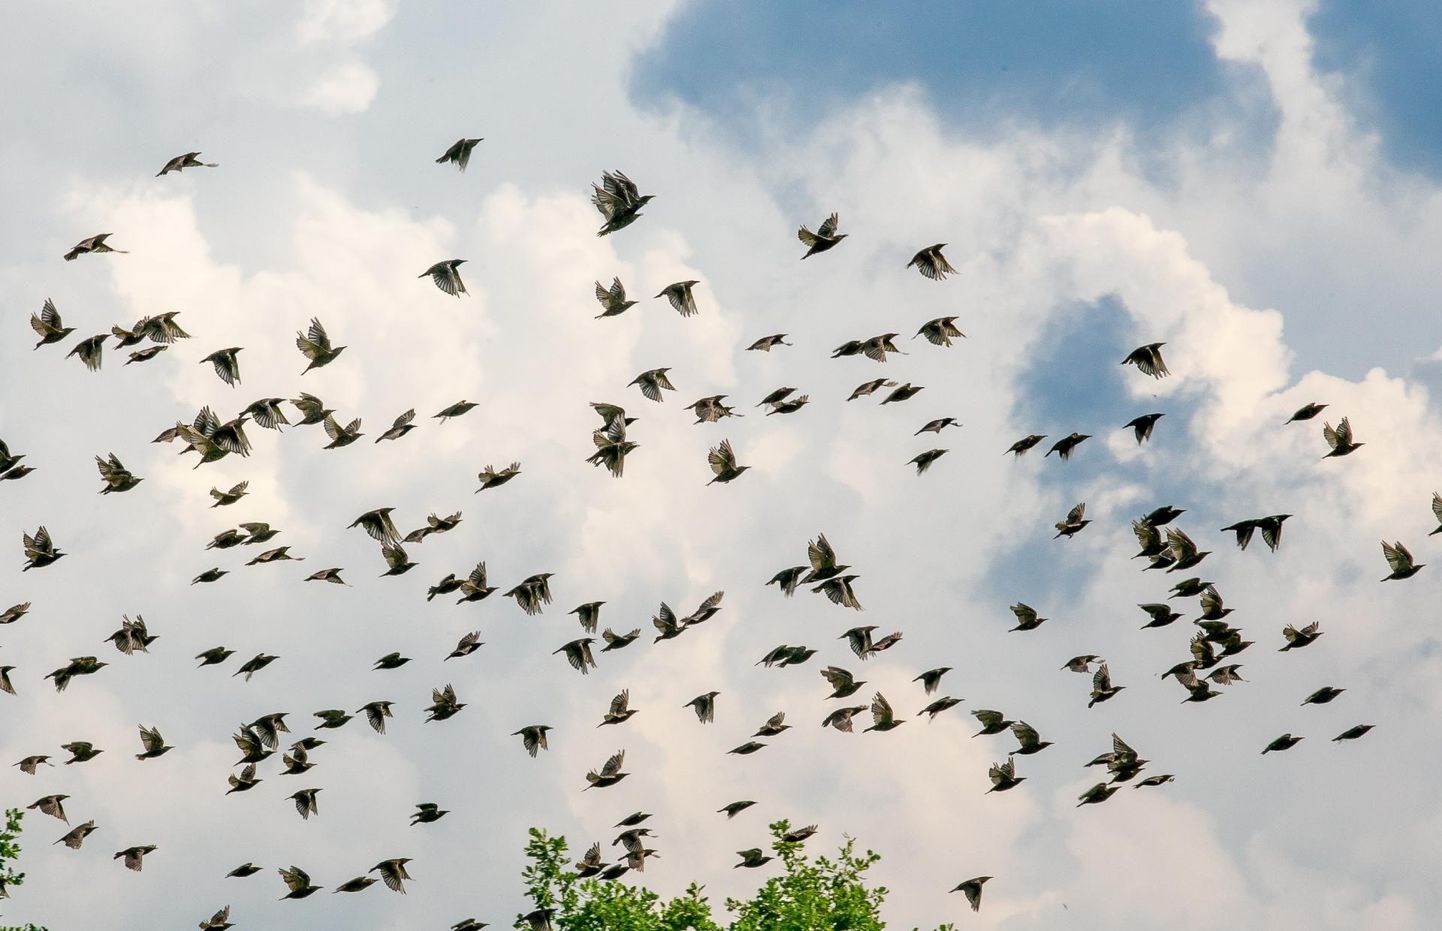 Eesti ornitoloogiaühing kutsub kõiki loodushuvilisi sel nädalavahetusel rändlinde vaatlema.